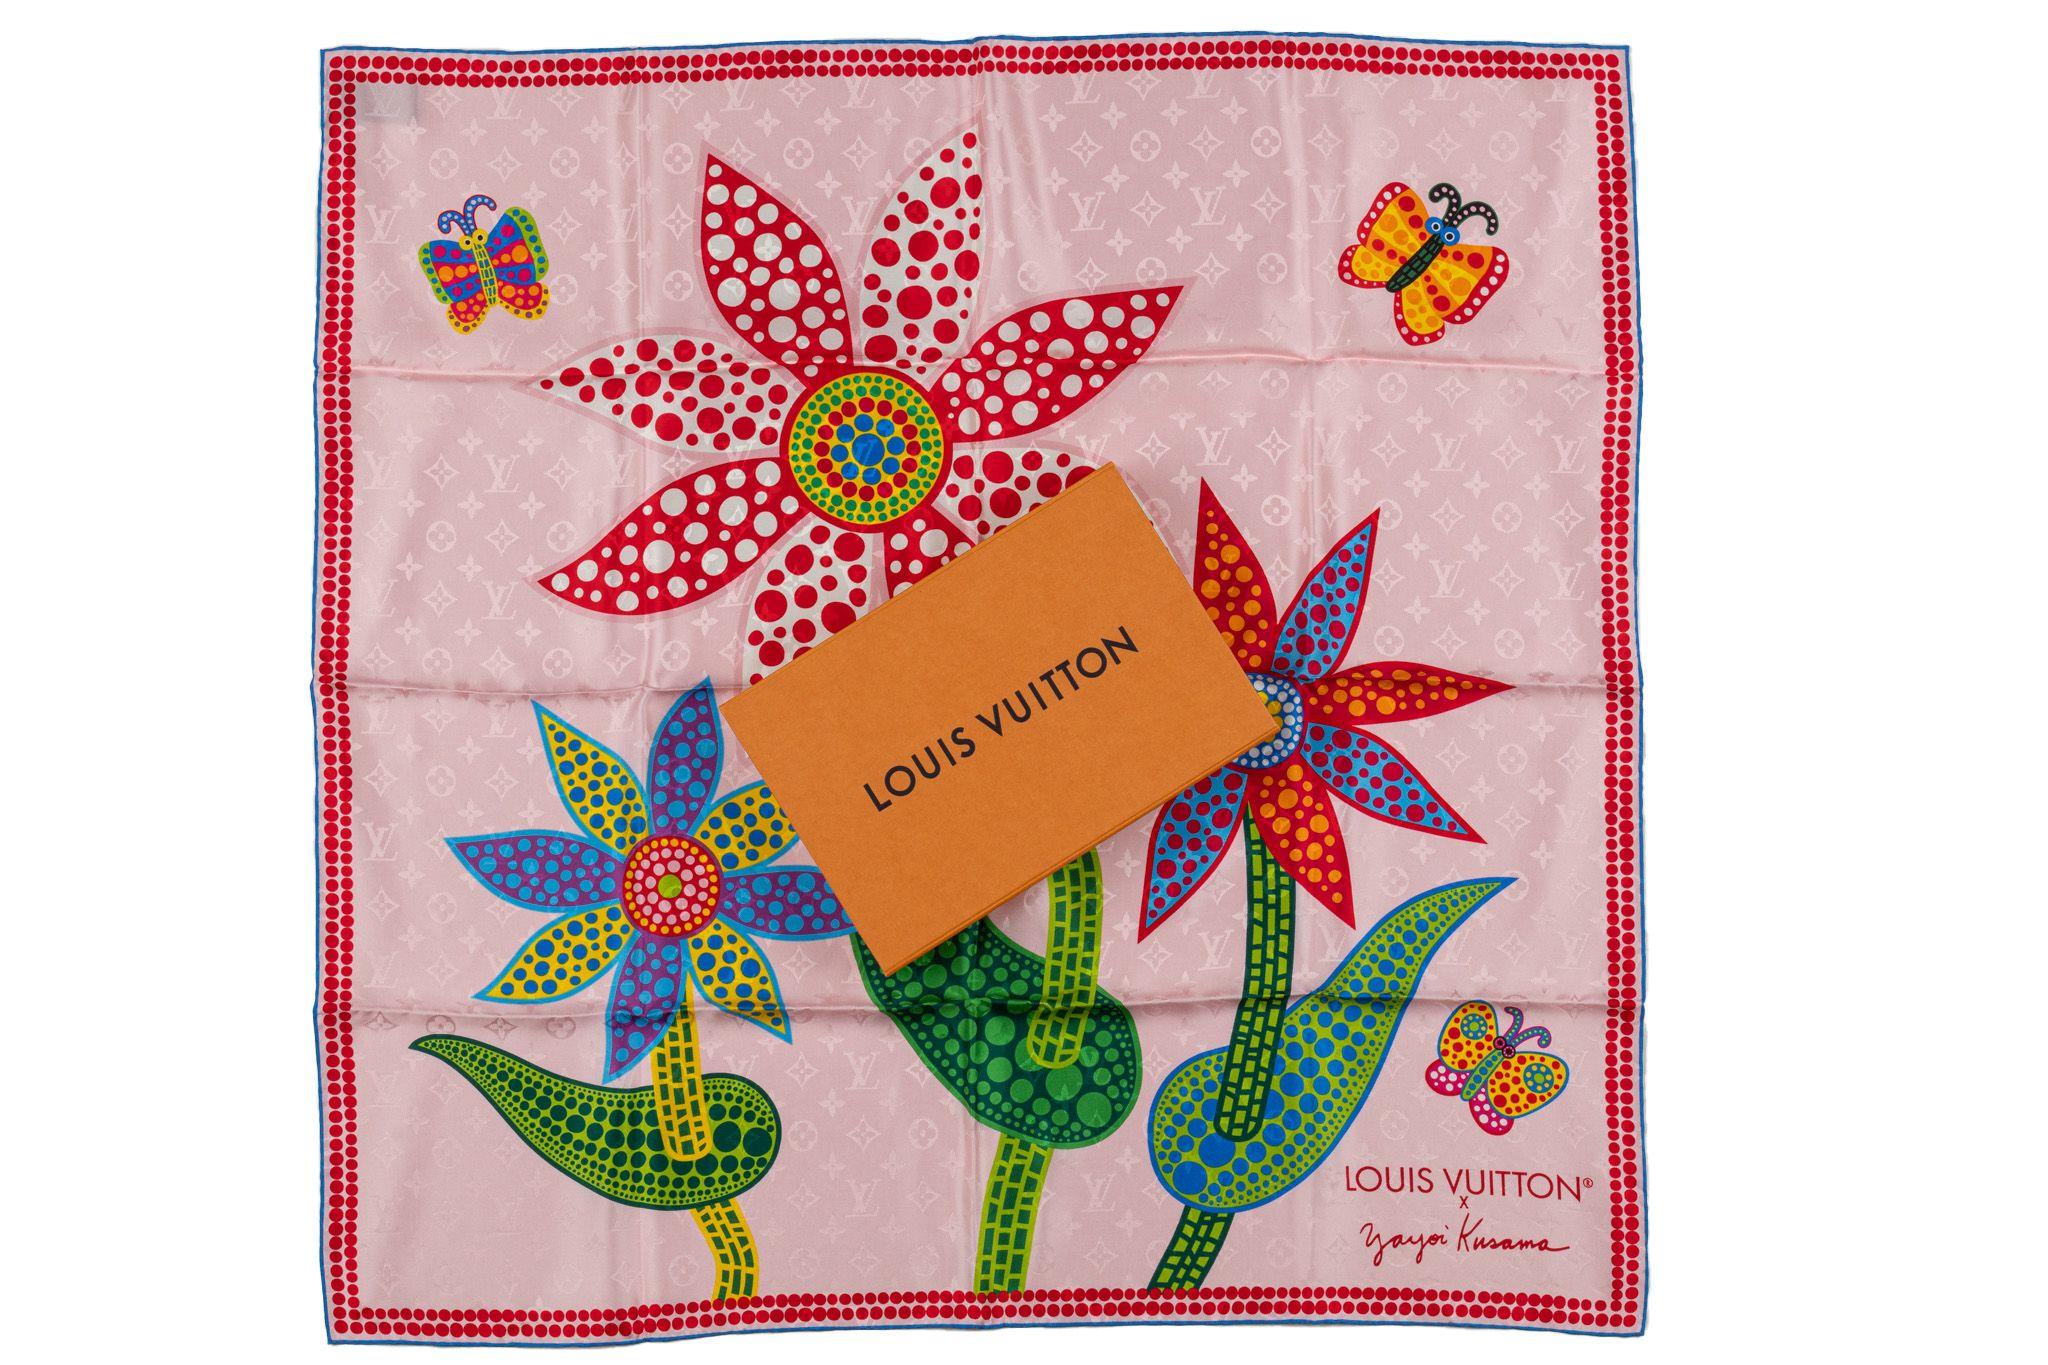 Foulard Louis Vuitton x Yayoi Kusama floral carré 90. Fabriquée en tissu de soie de haute qualité, cette écharpe est parfaite pour toutes les occasions, des sorties décontractées aux événements formels. Sa belle couleur rose et son motif floral le